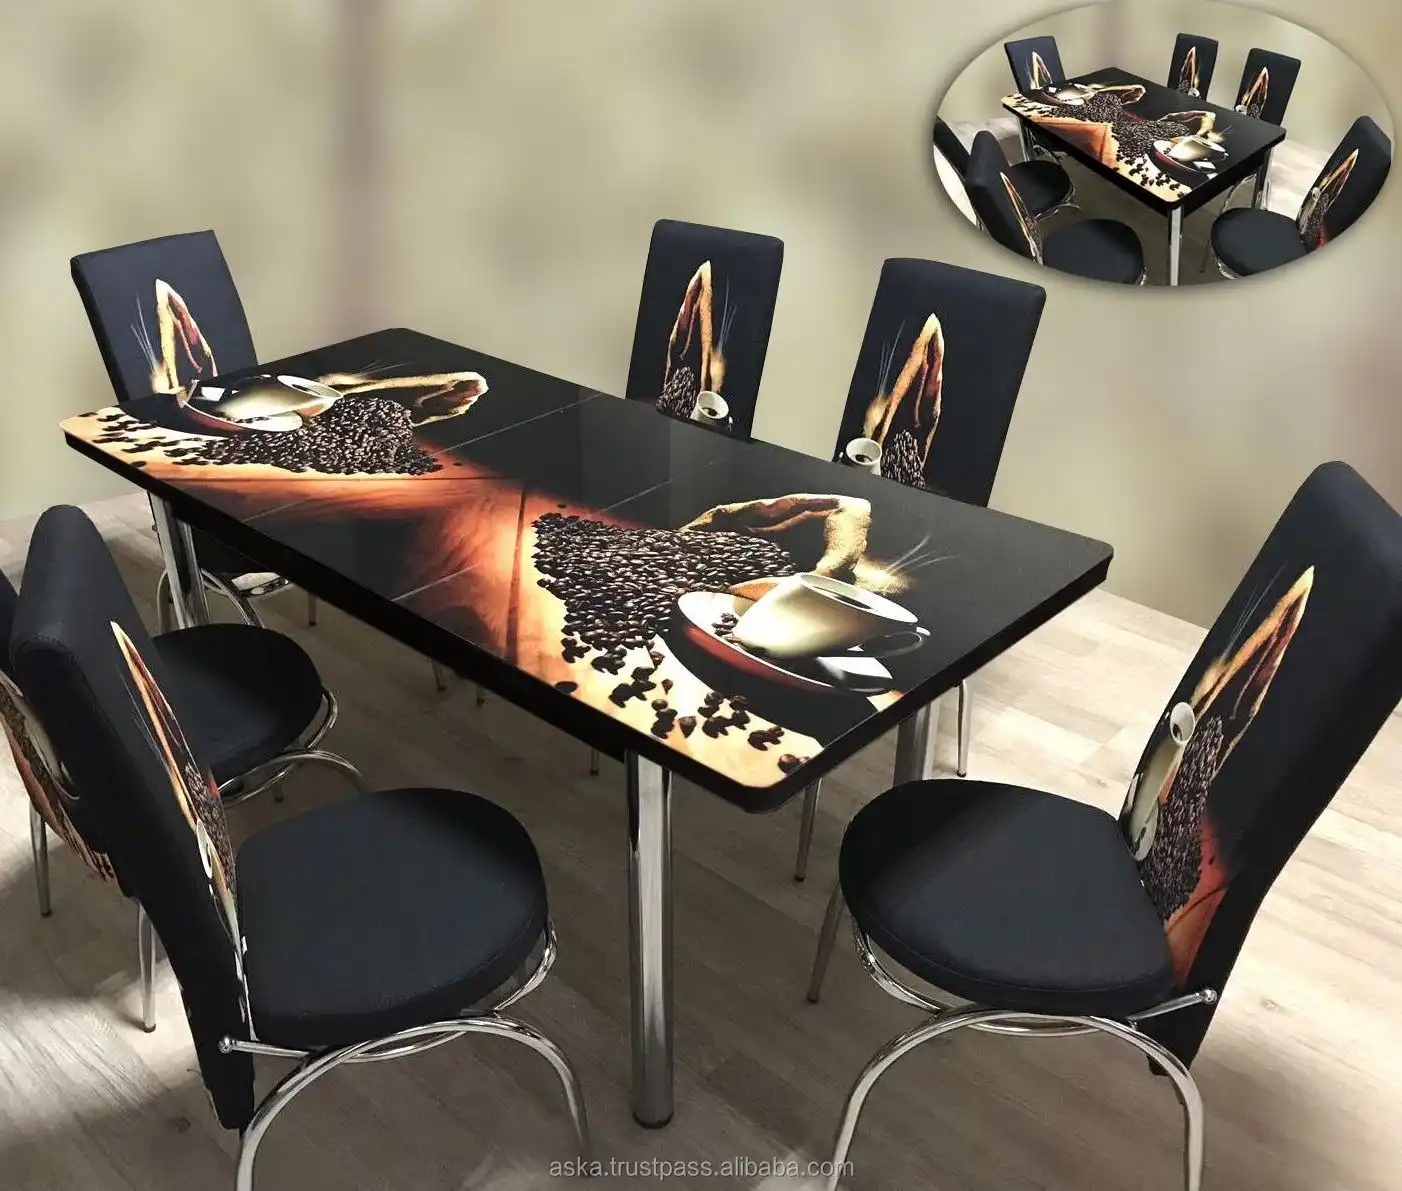 Juego de comedor mesa de cocina de vidrio con mecanismo, silla de metal tapizada estampada